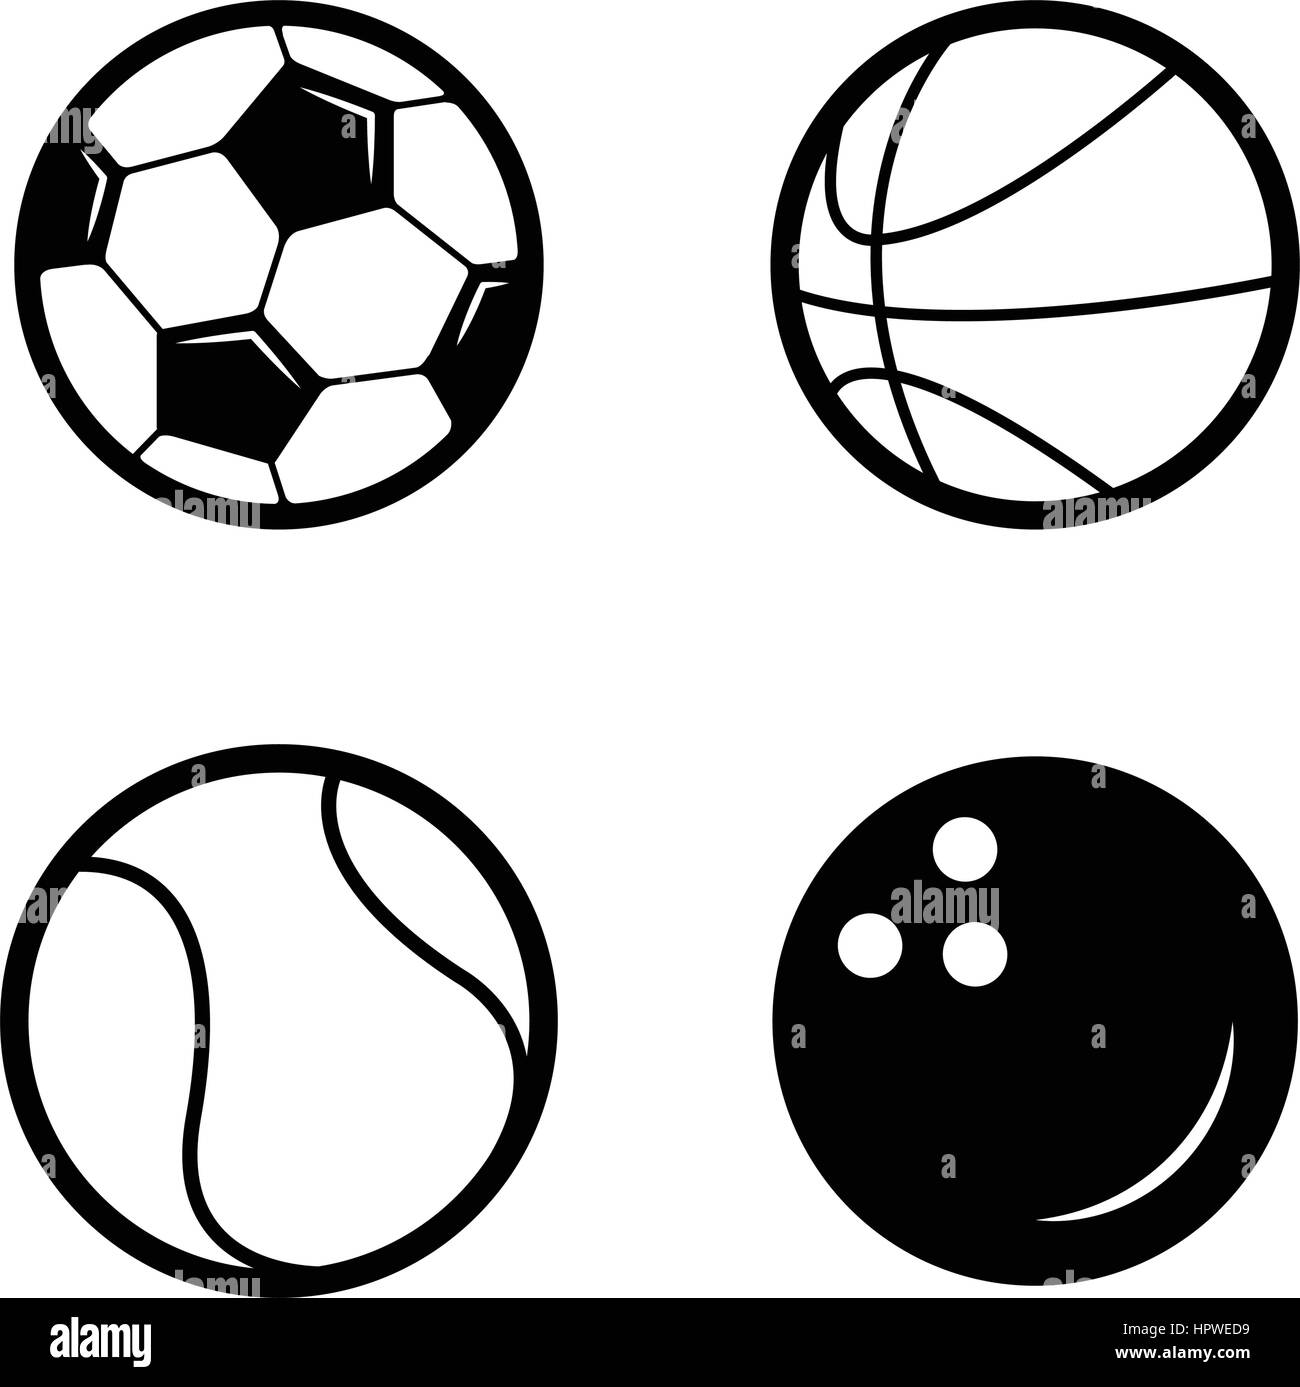 Soccer ball, Basketball, Tennis ball, bowling icon Stock Vector